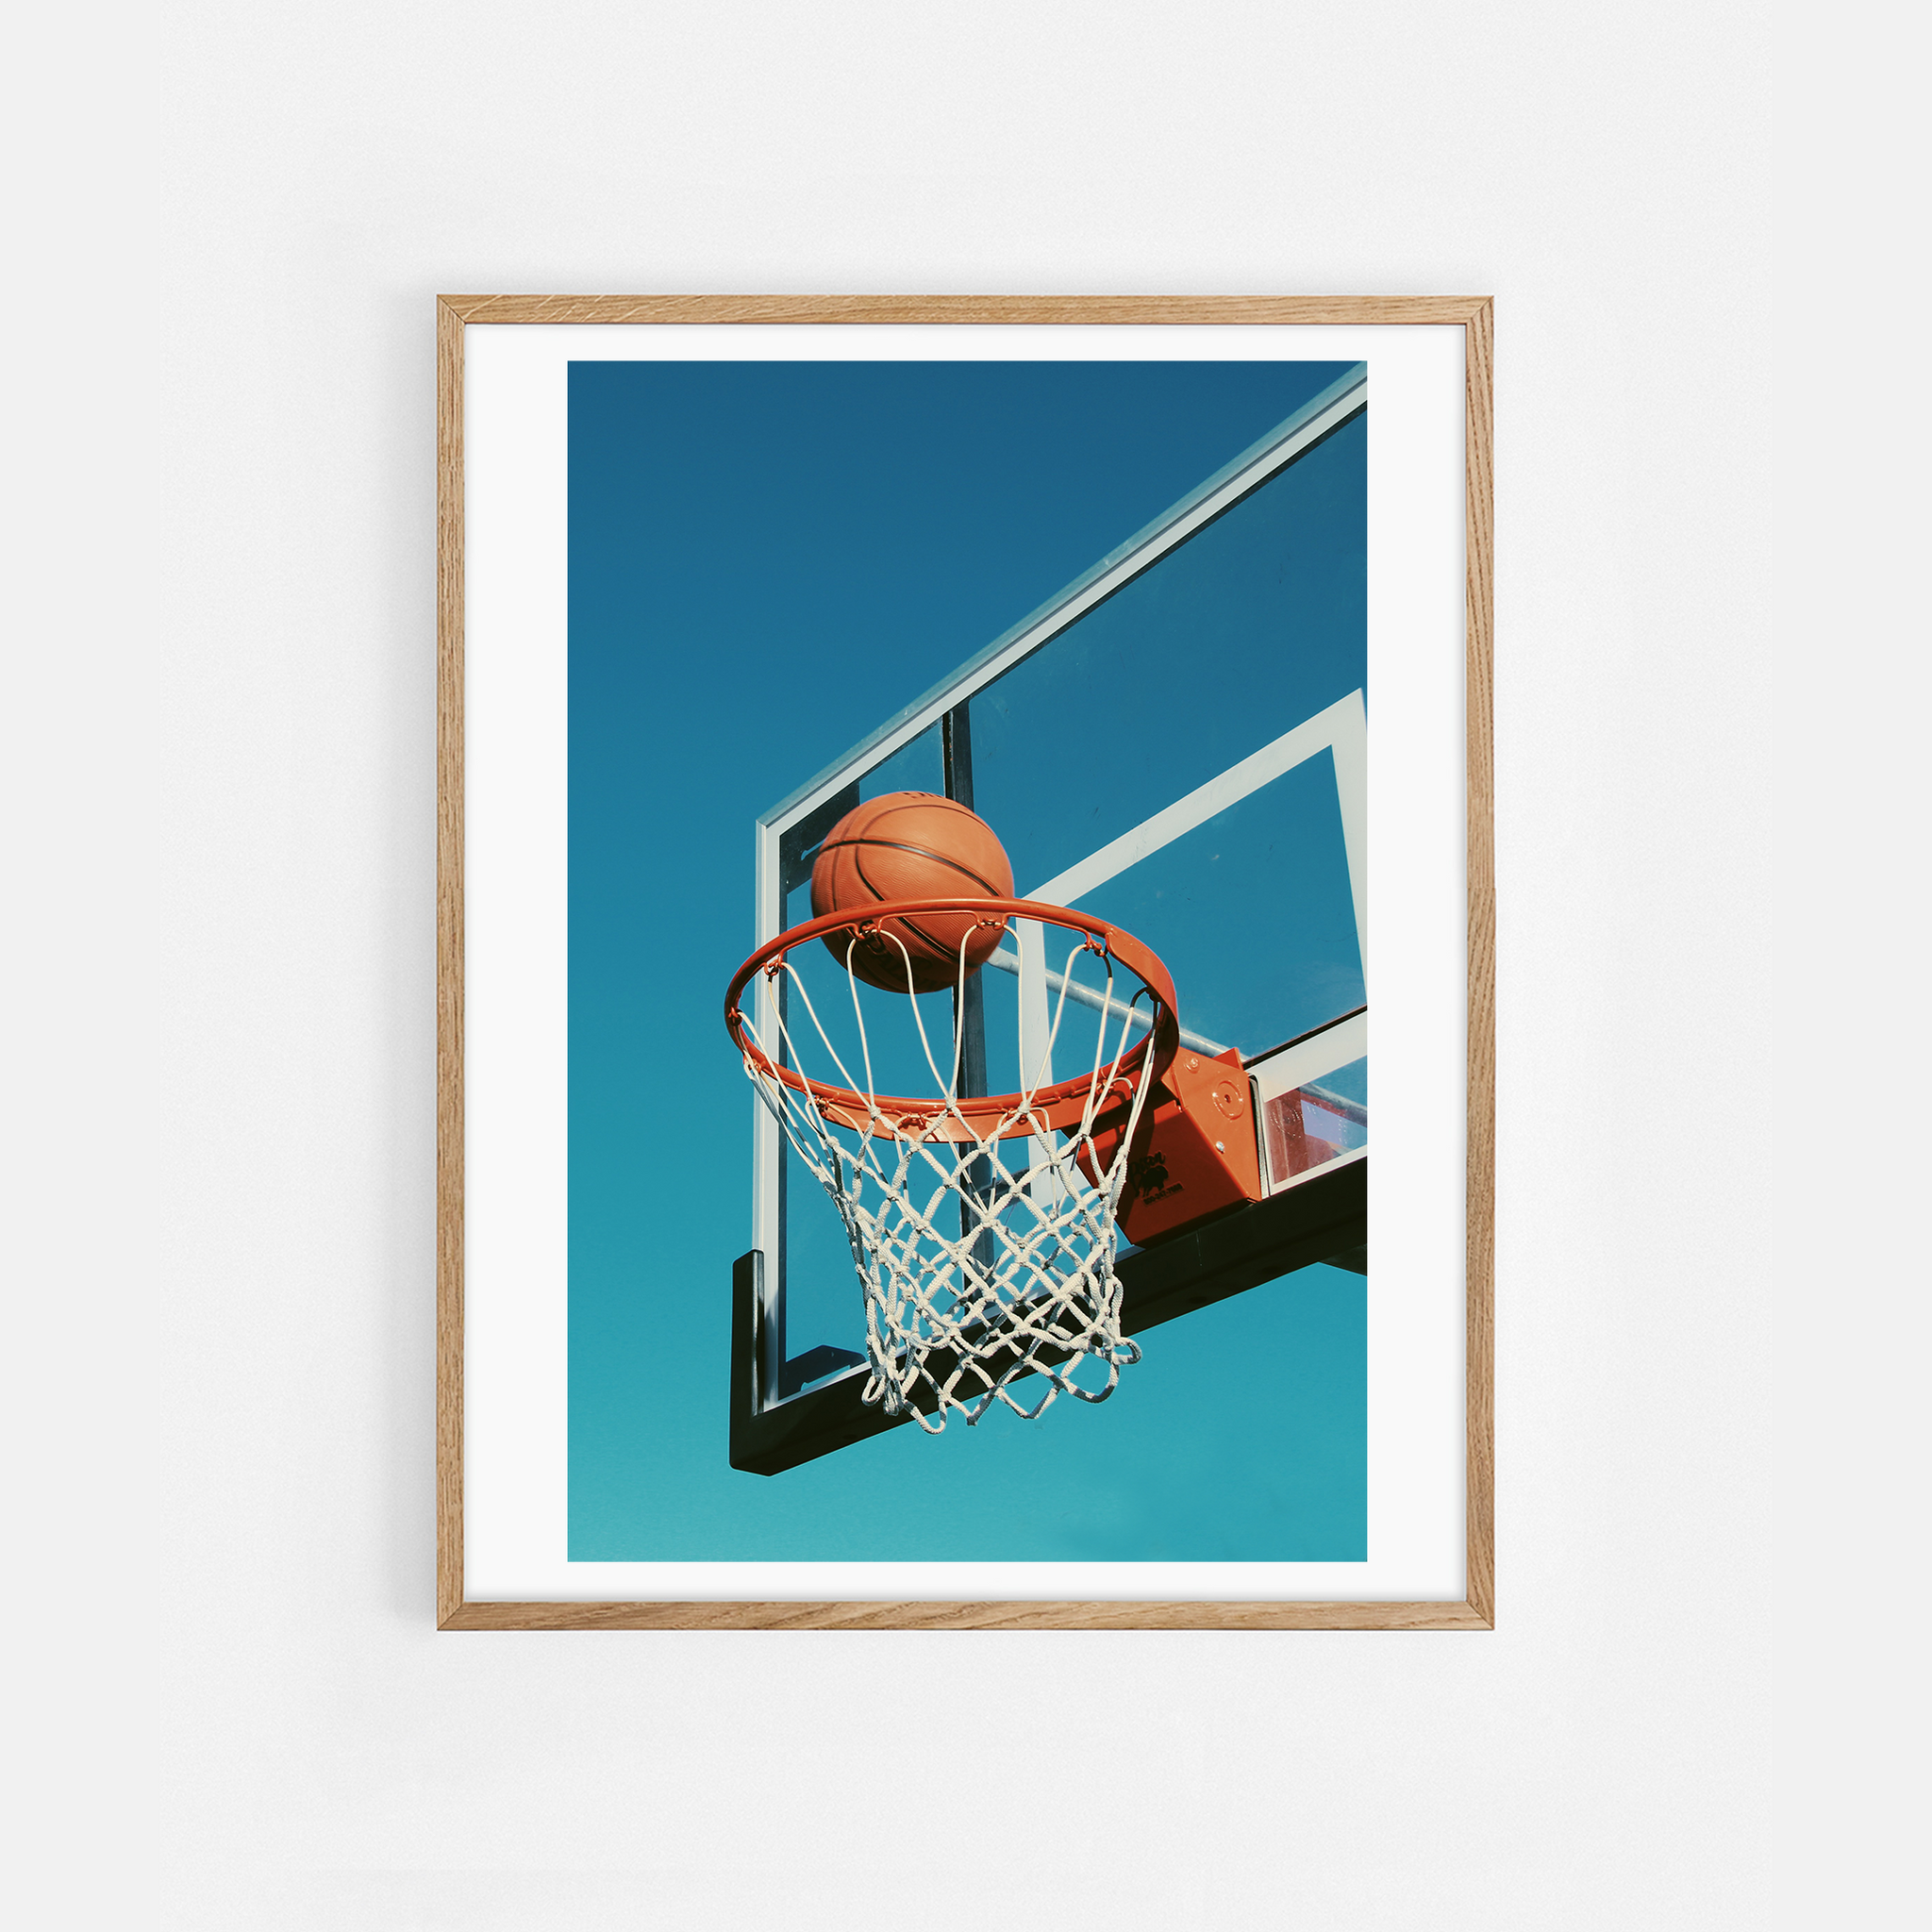 Hoop Dreams by Kasper Nyman